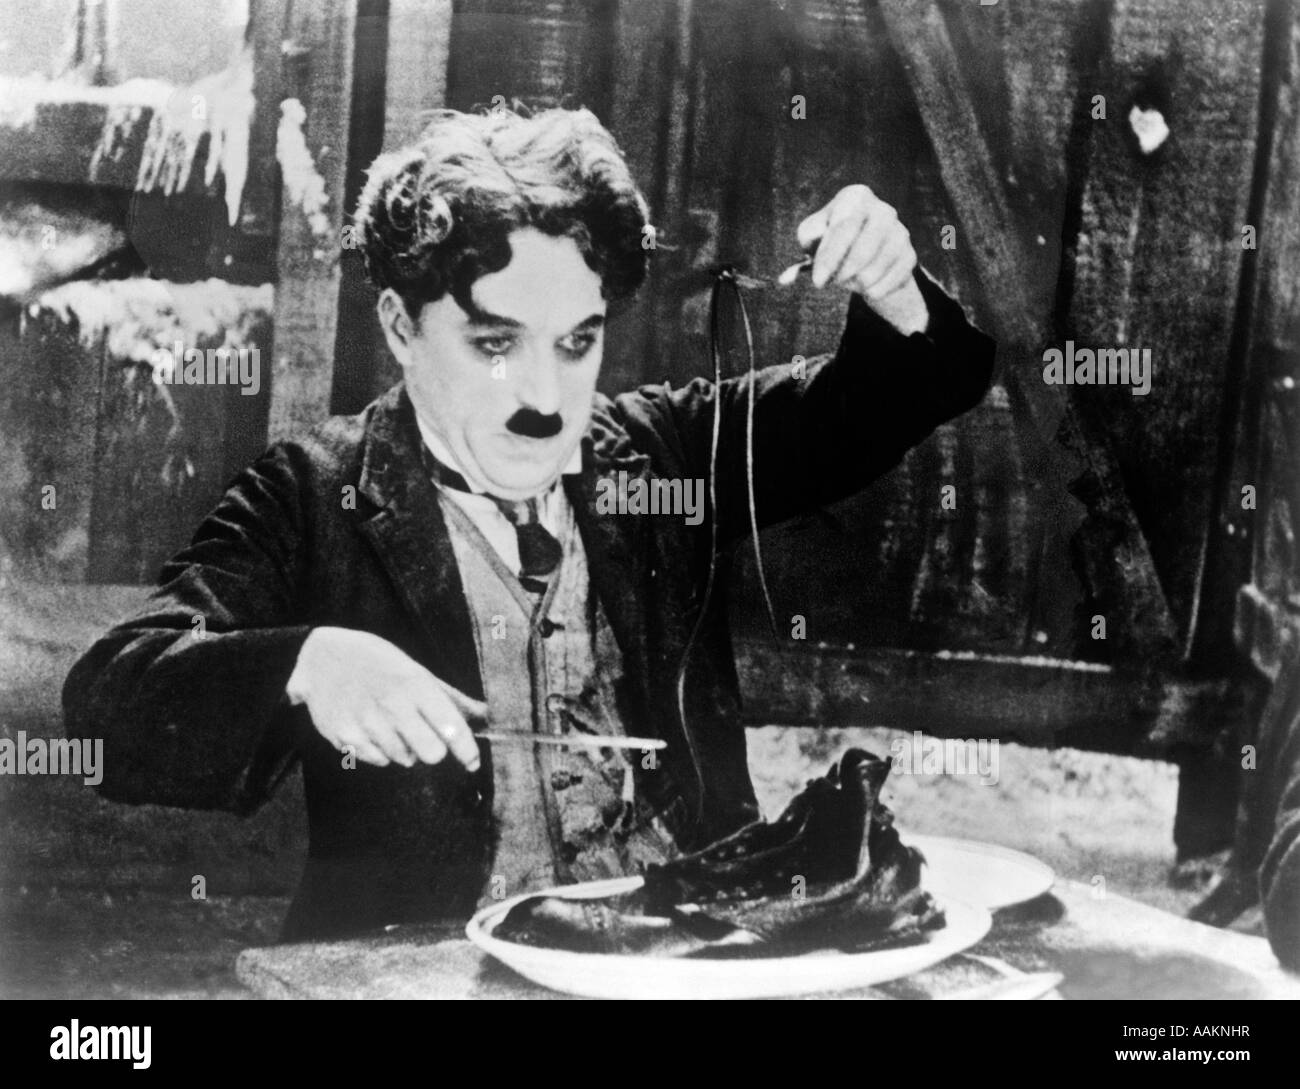 1920s Charles Chaplin mangiare SCARPA IN SCENA DAL 1925 FILM IL GOLD RUSH Foto Stock